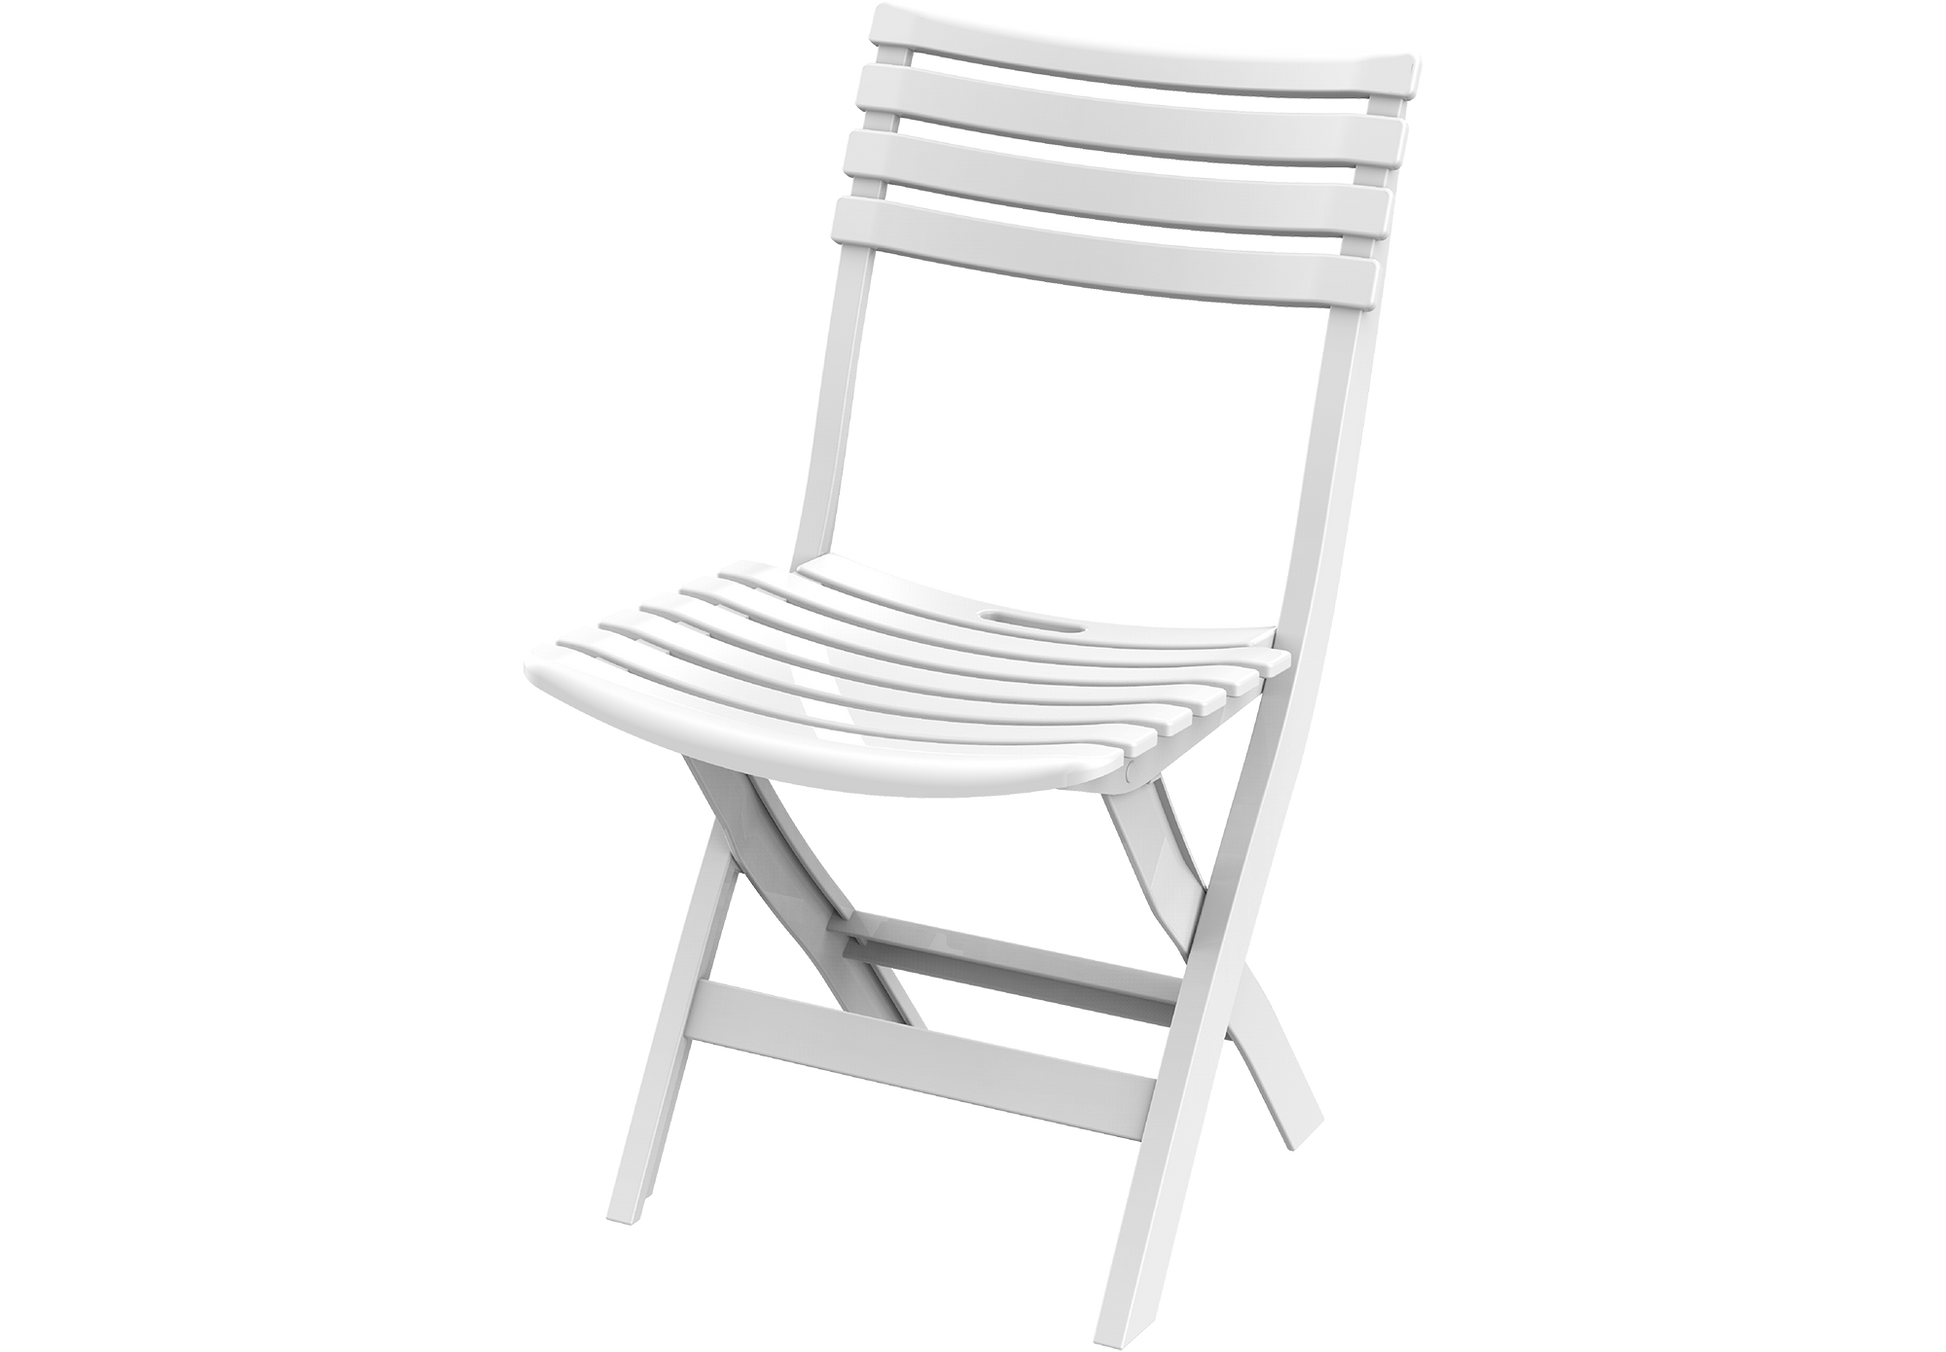  Indoor outdoor plastic Chair cosmoplast kuwait